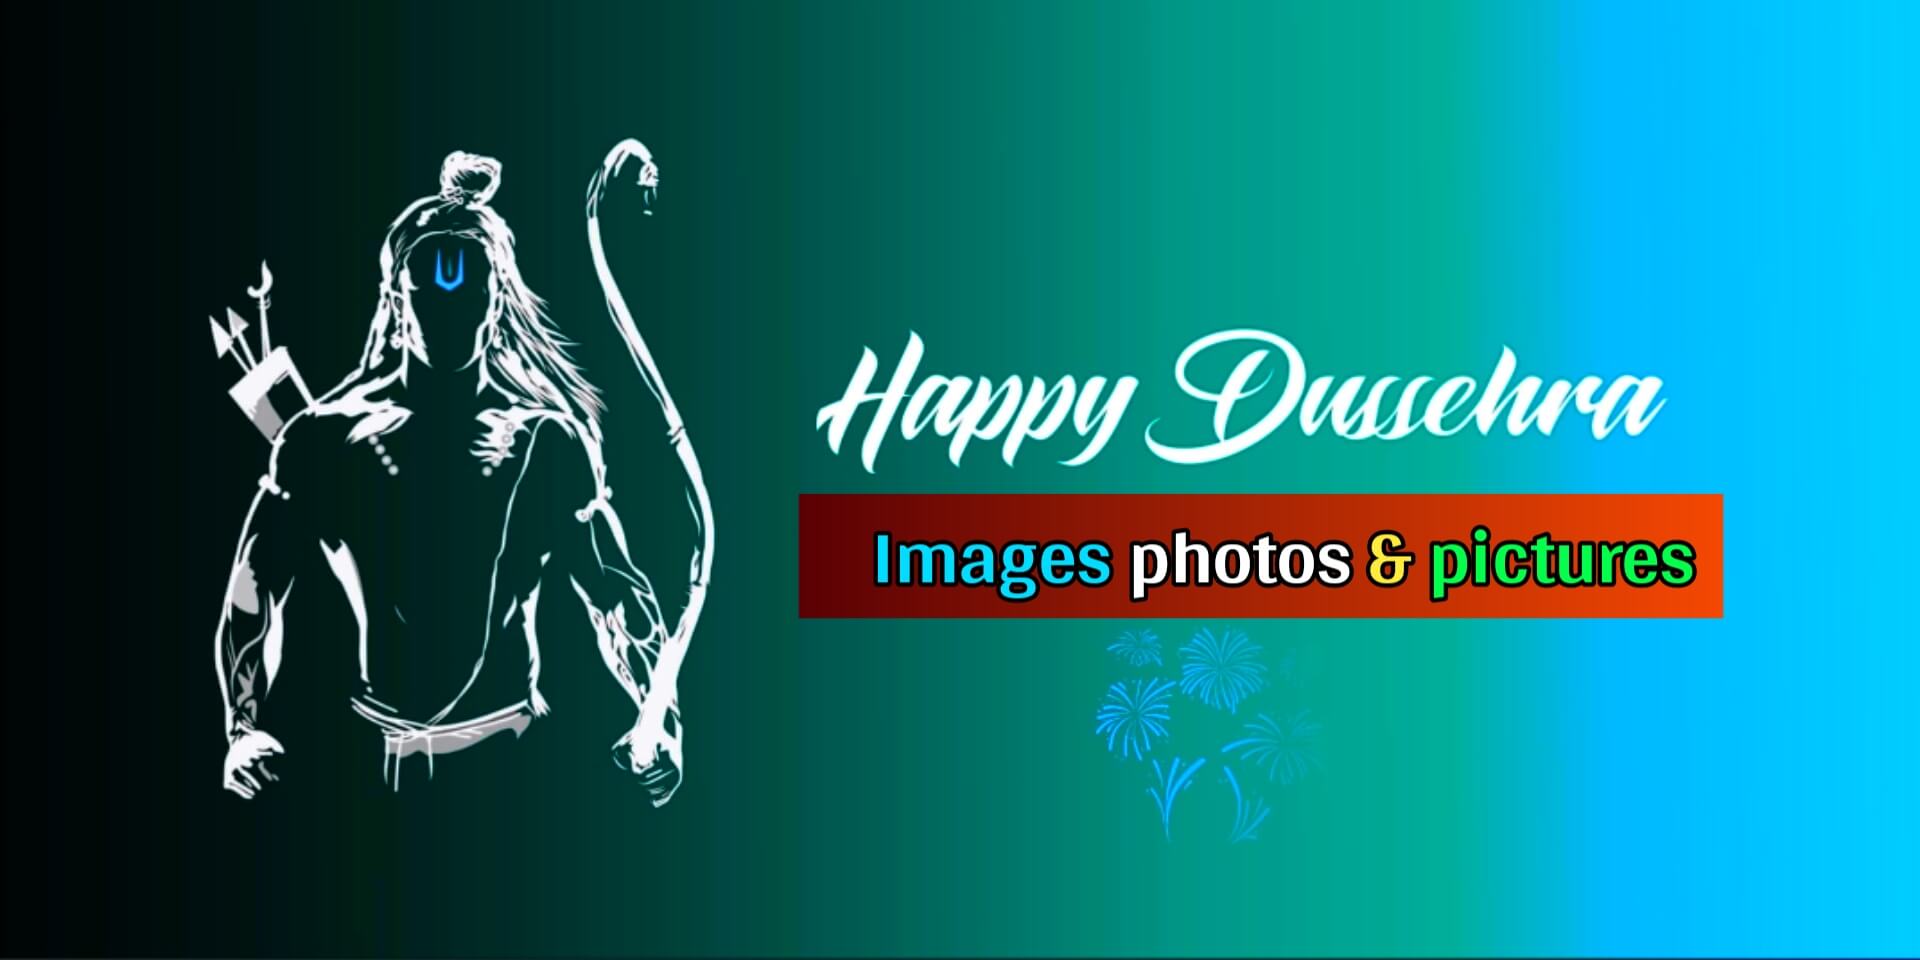 Happy Dussehra images